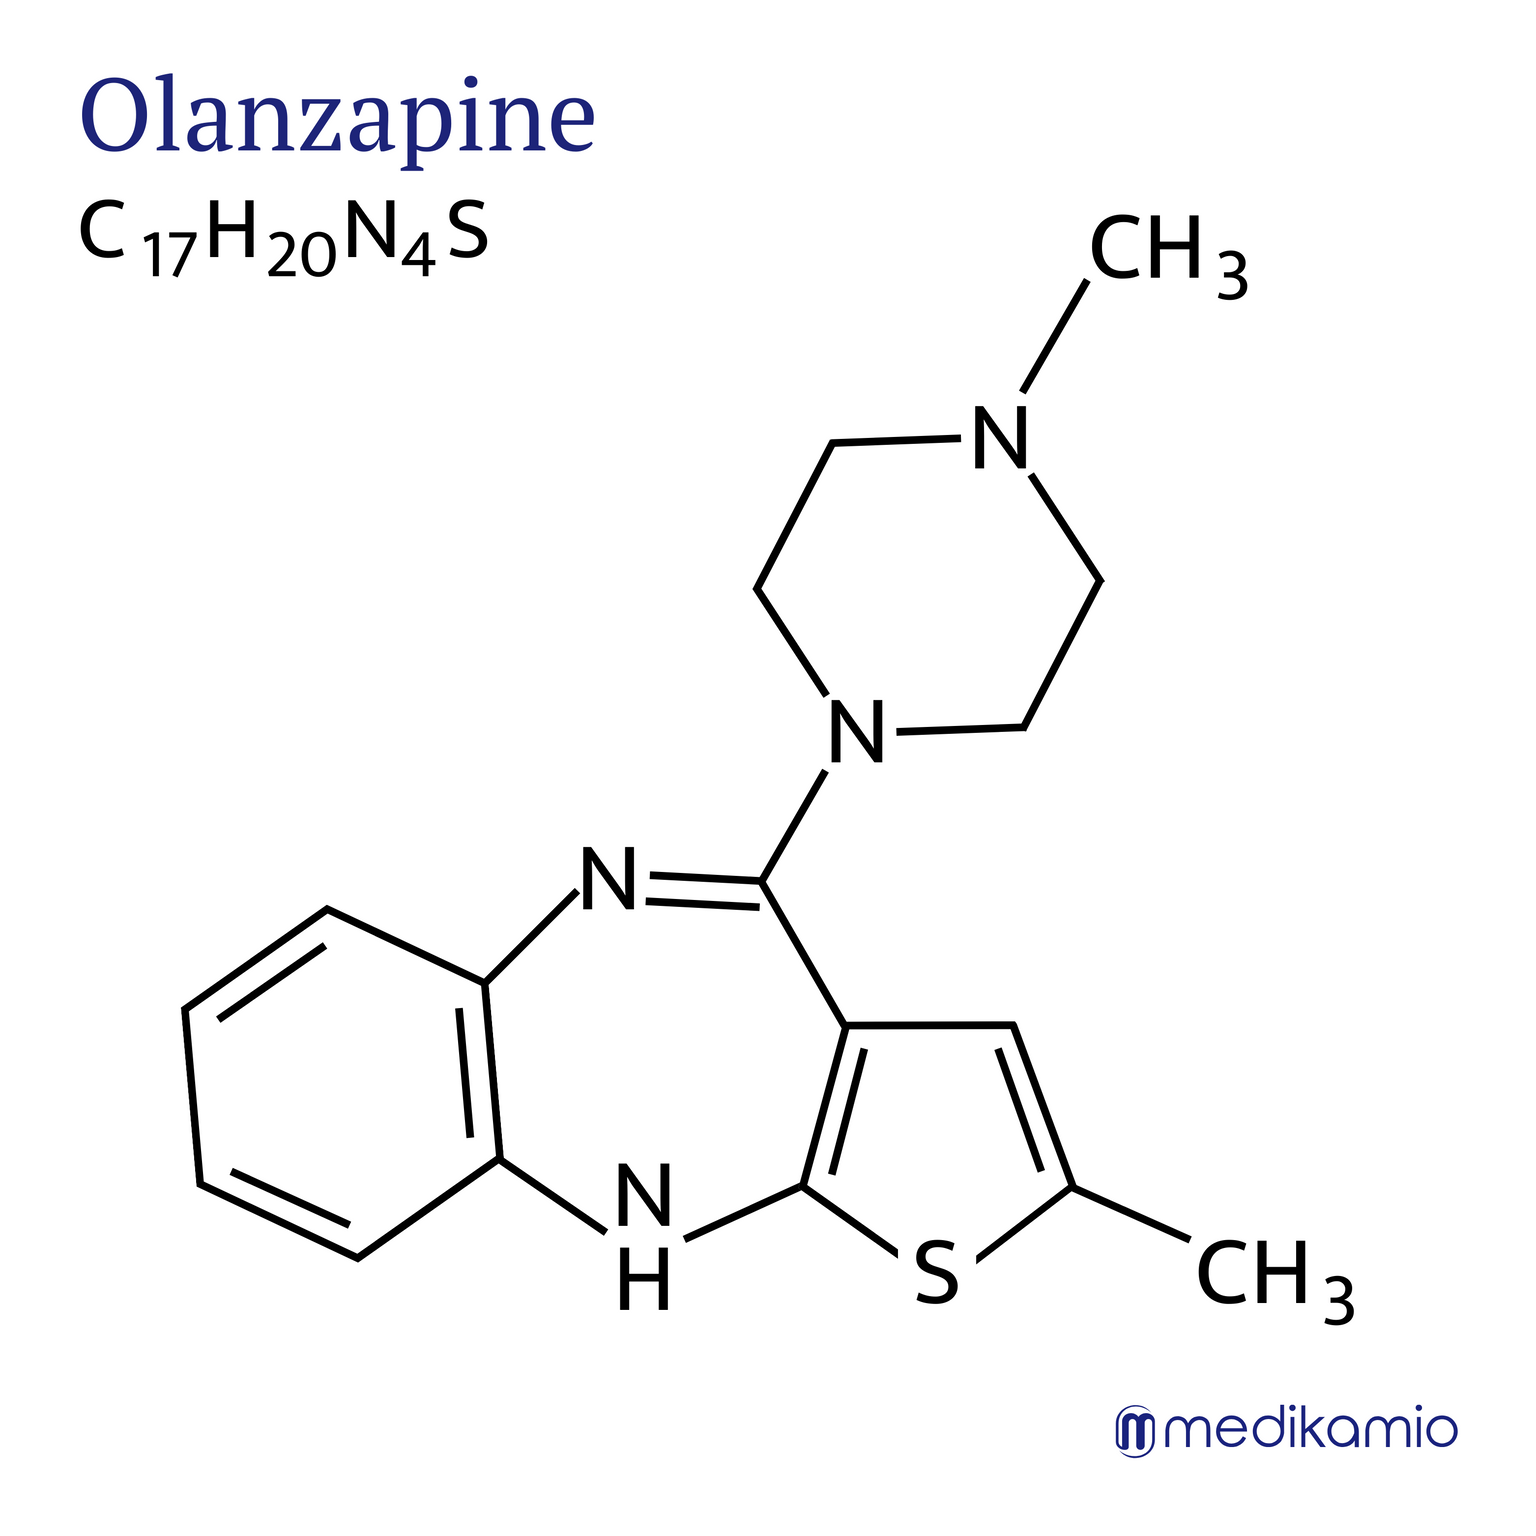 Fórmula estructural gráfica del principio activo olanzapina